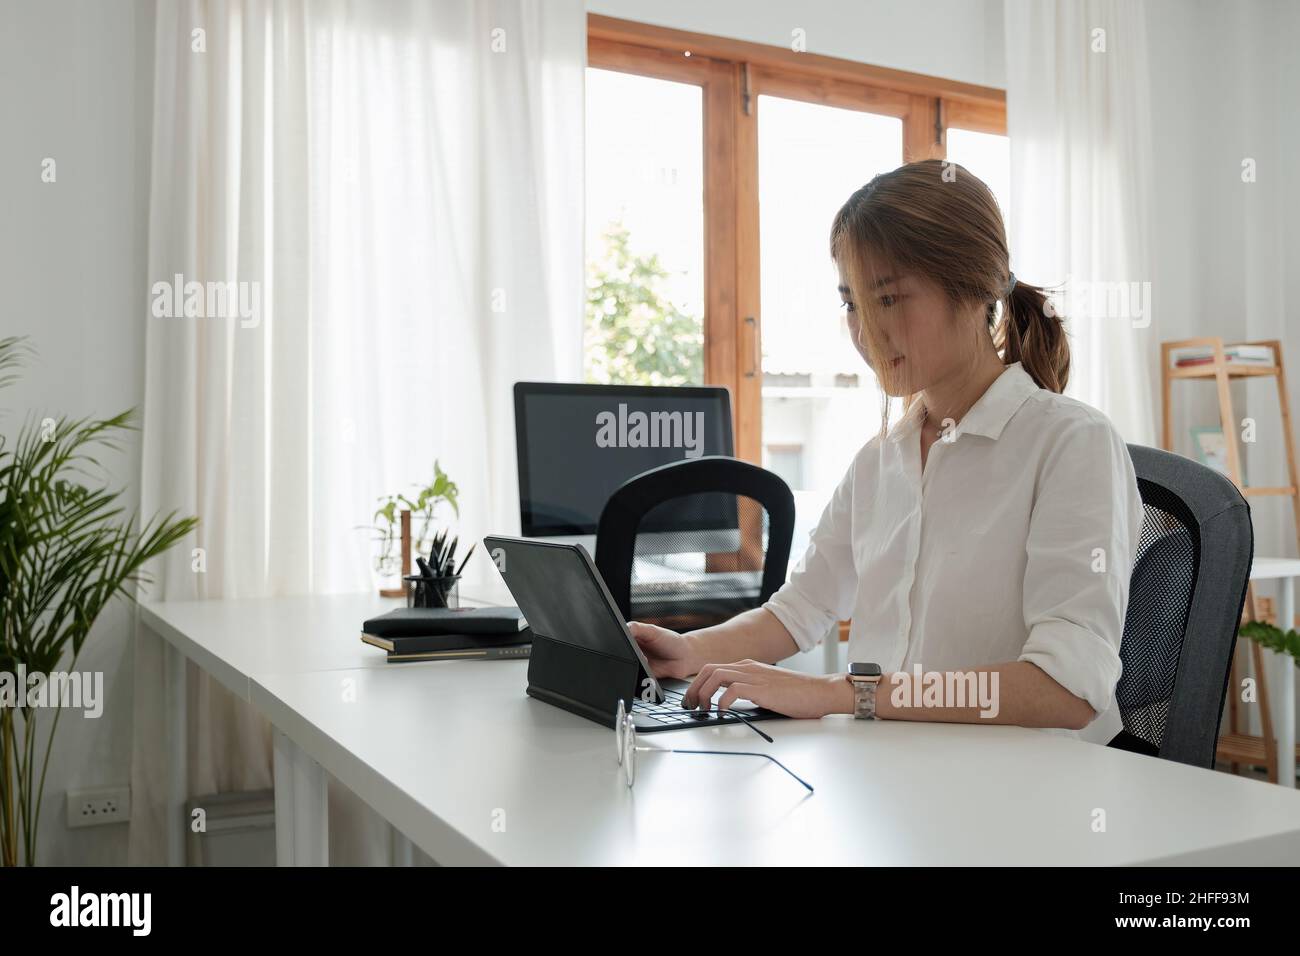 Una joven asiática trabaja en una tableta digital para aprender un curso o entrenamiento educativo, seminario, educación en línea en el concepto de casa Foto de stock